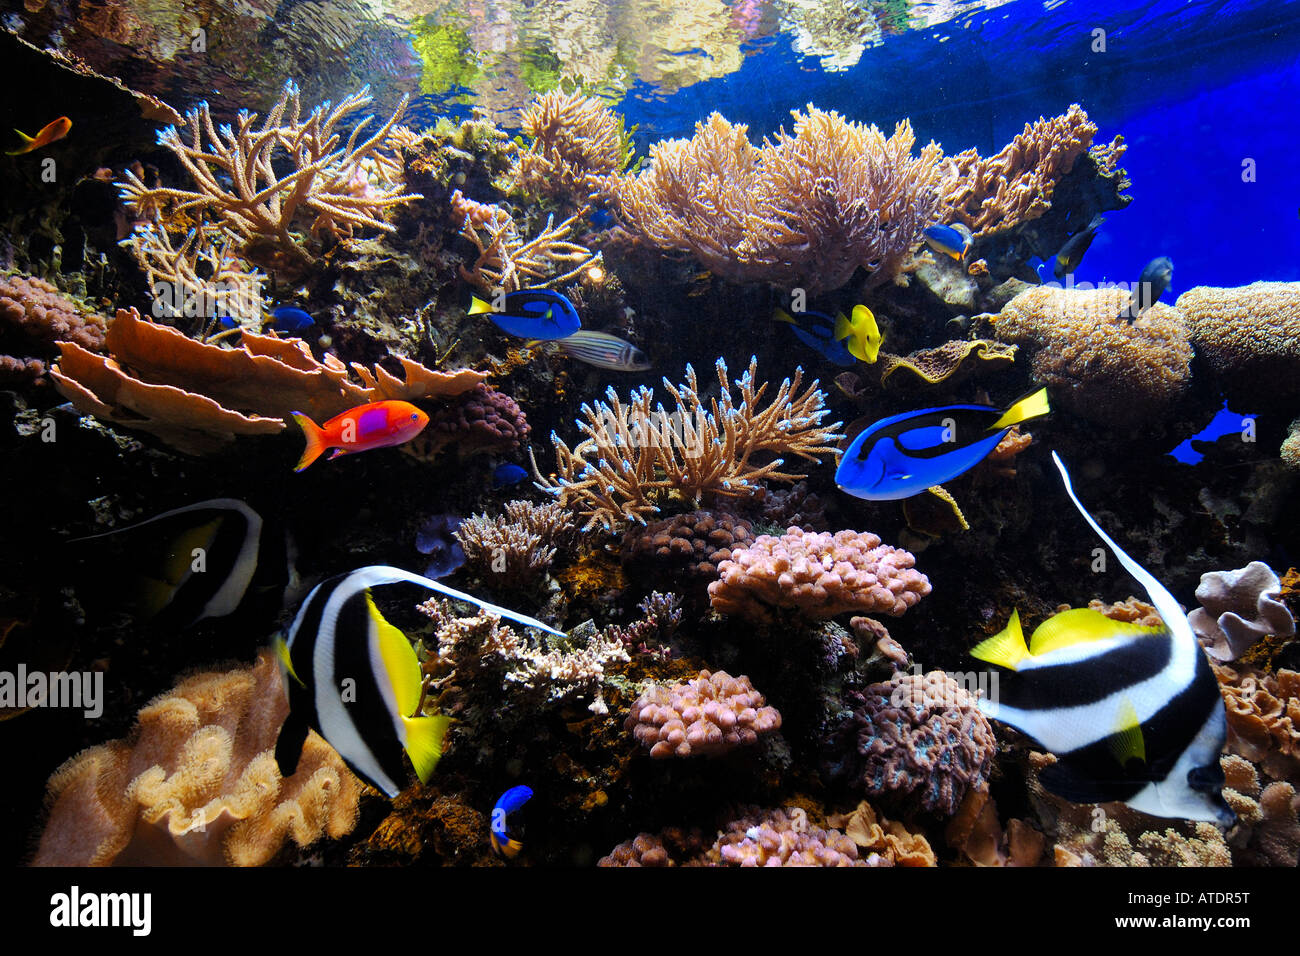 Tropical fish aquarium Stock Photo